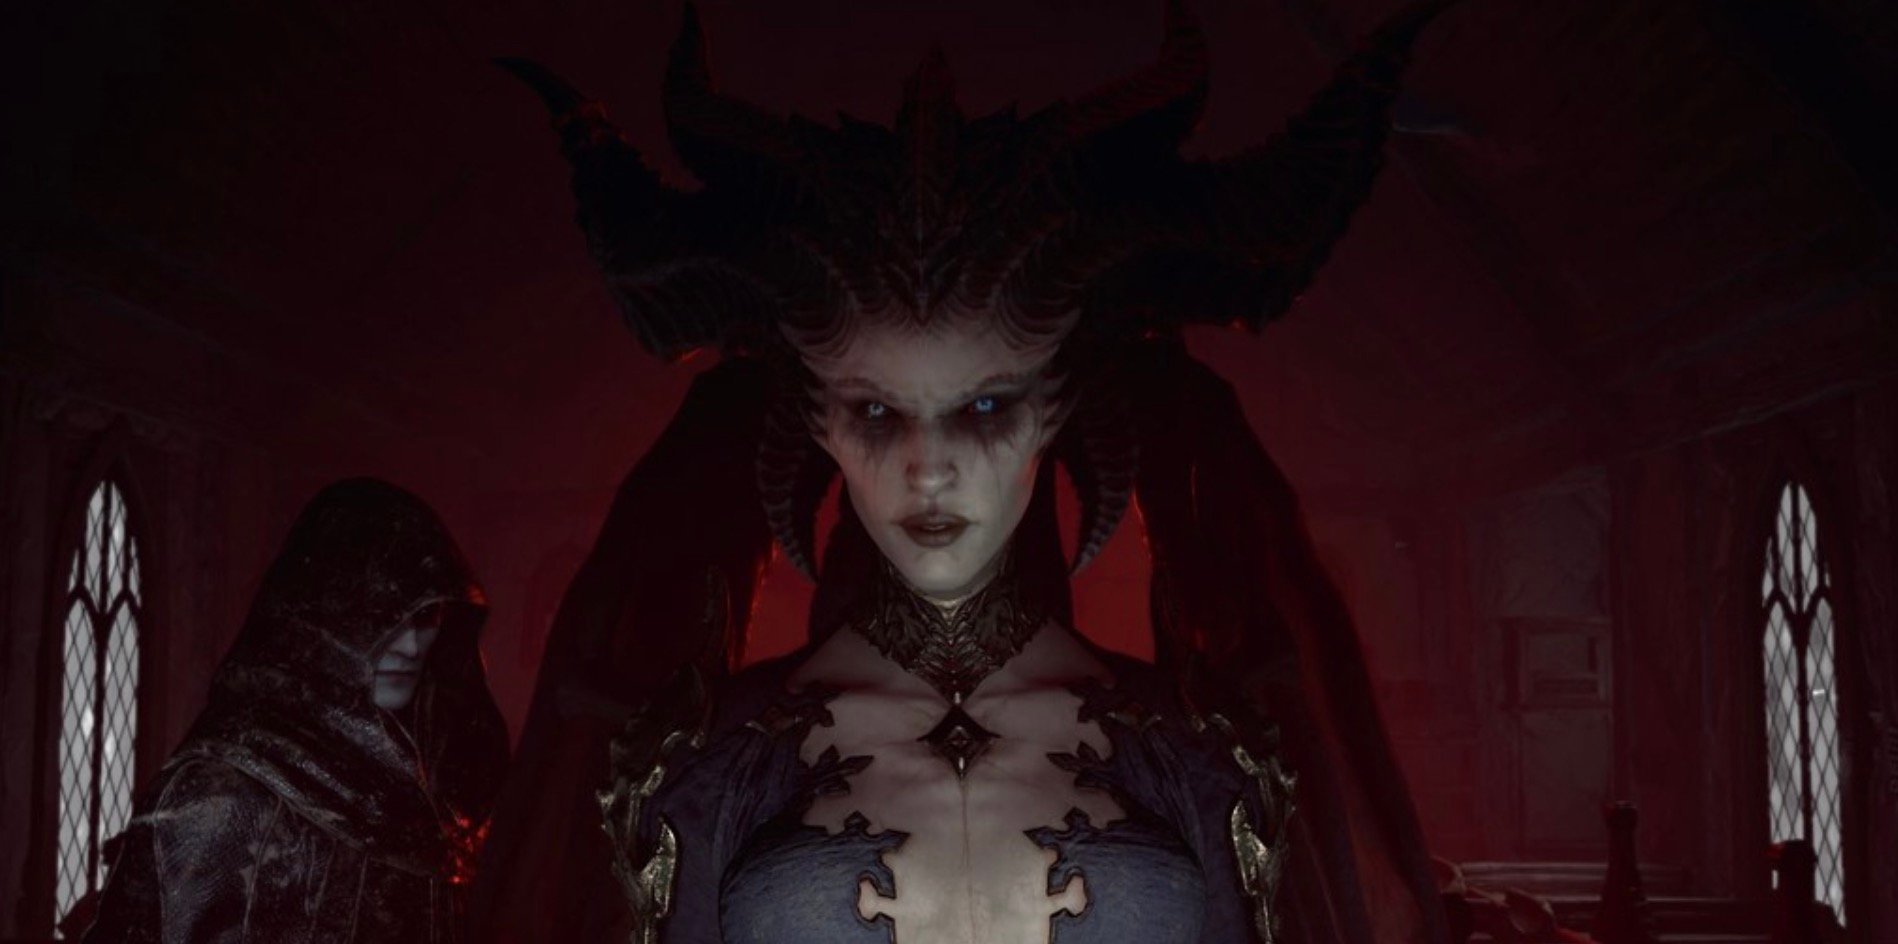 Diablo 4 Prime Gaming Rewards - Four Tier Skips in August